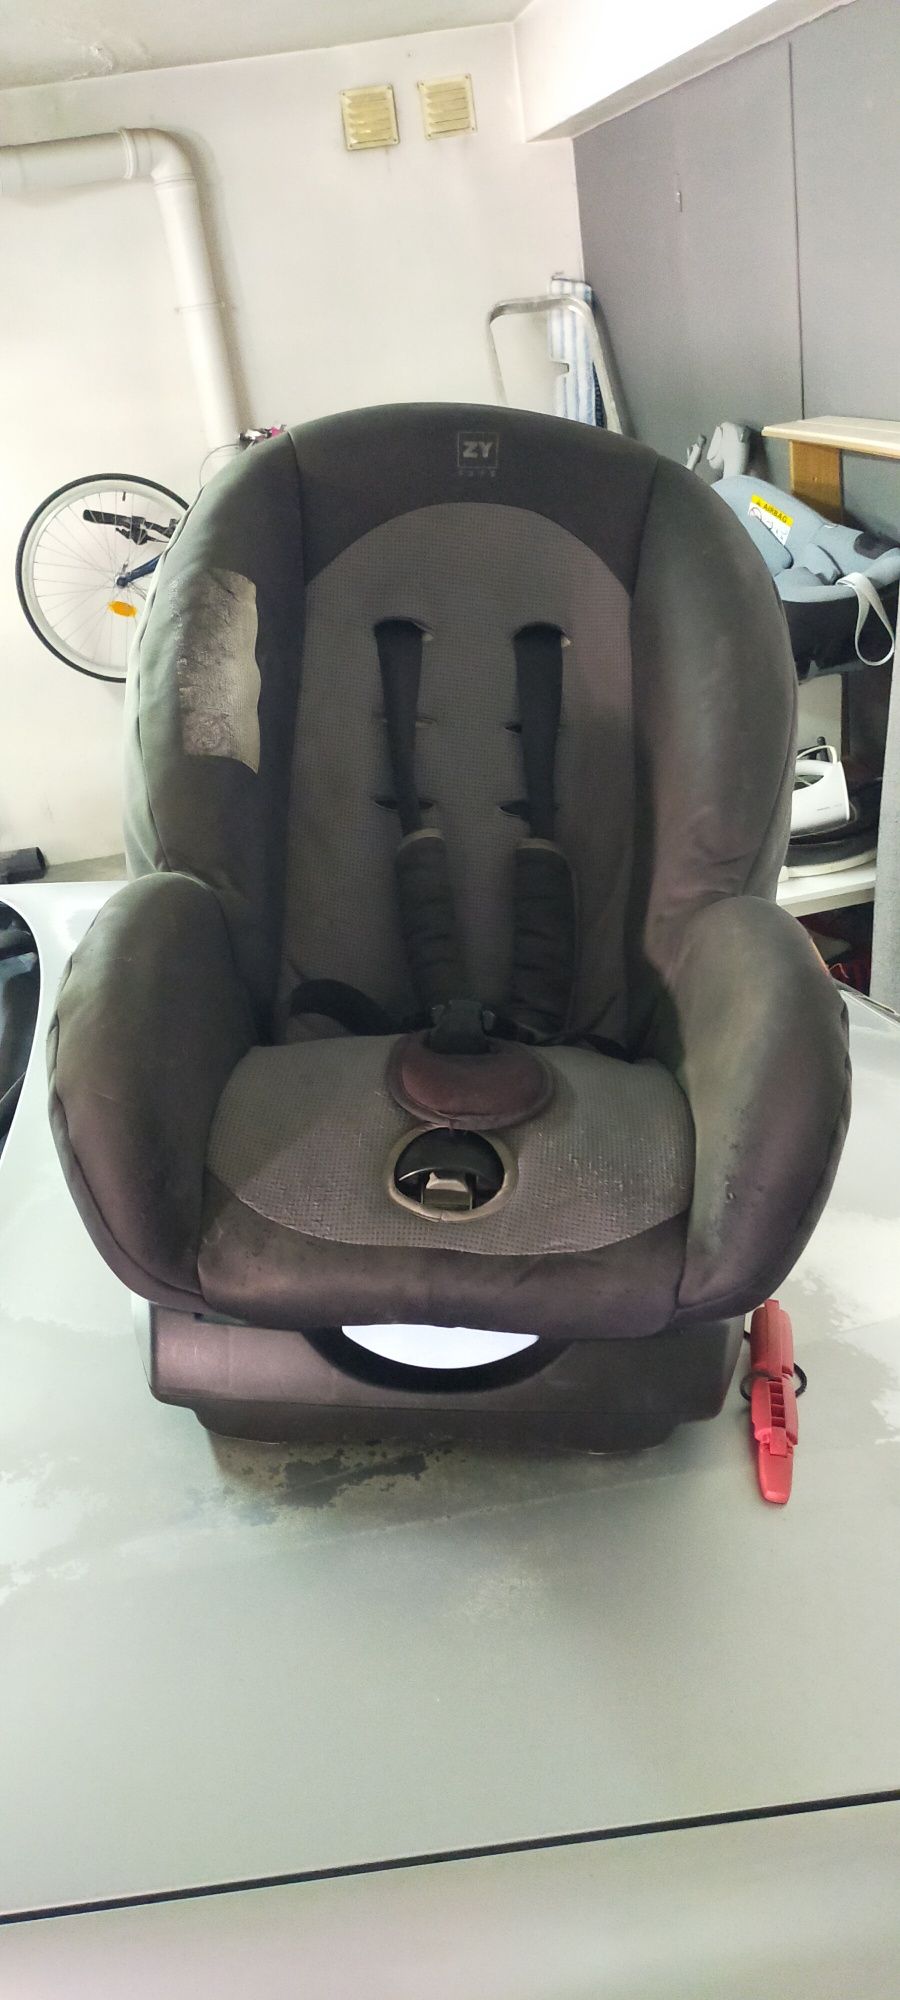 Vendo duas cadeiras auto de bebê em bom estado   bebê